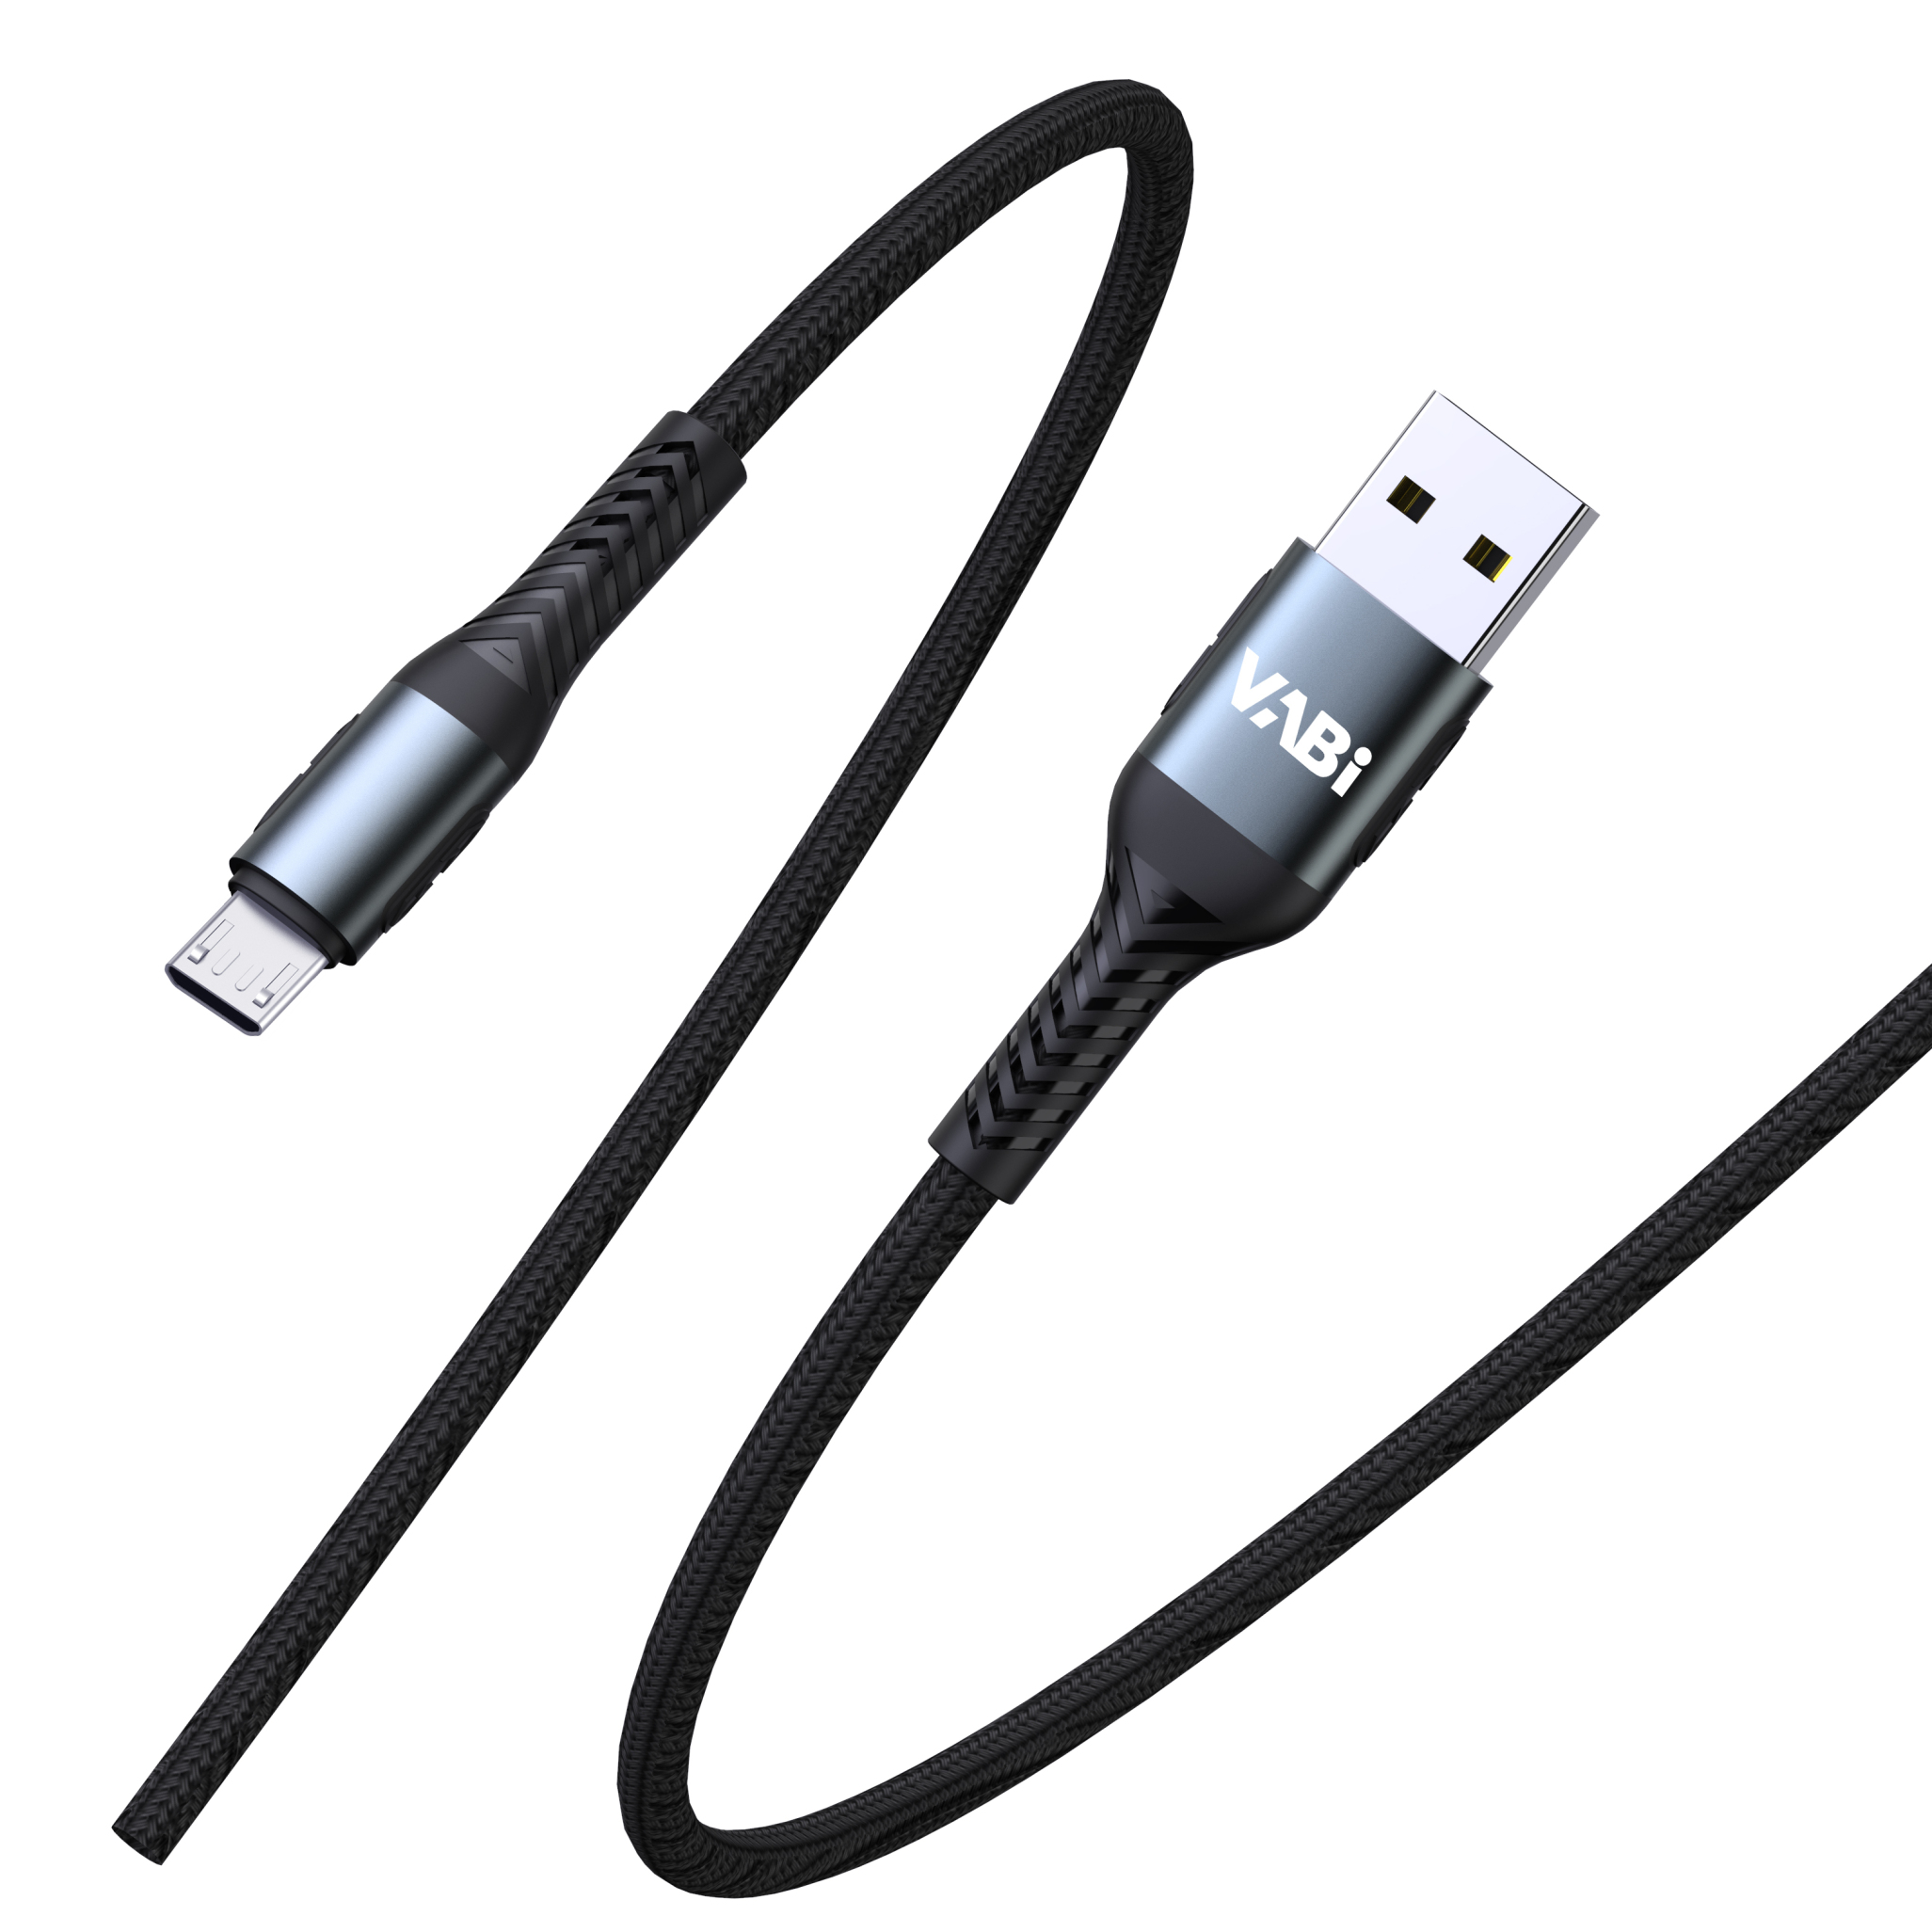  کابل تبدیل USB به Micro USB 